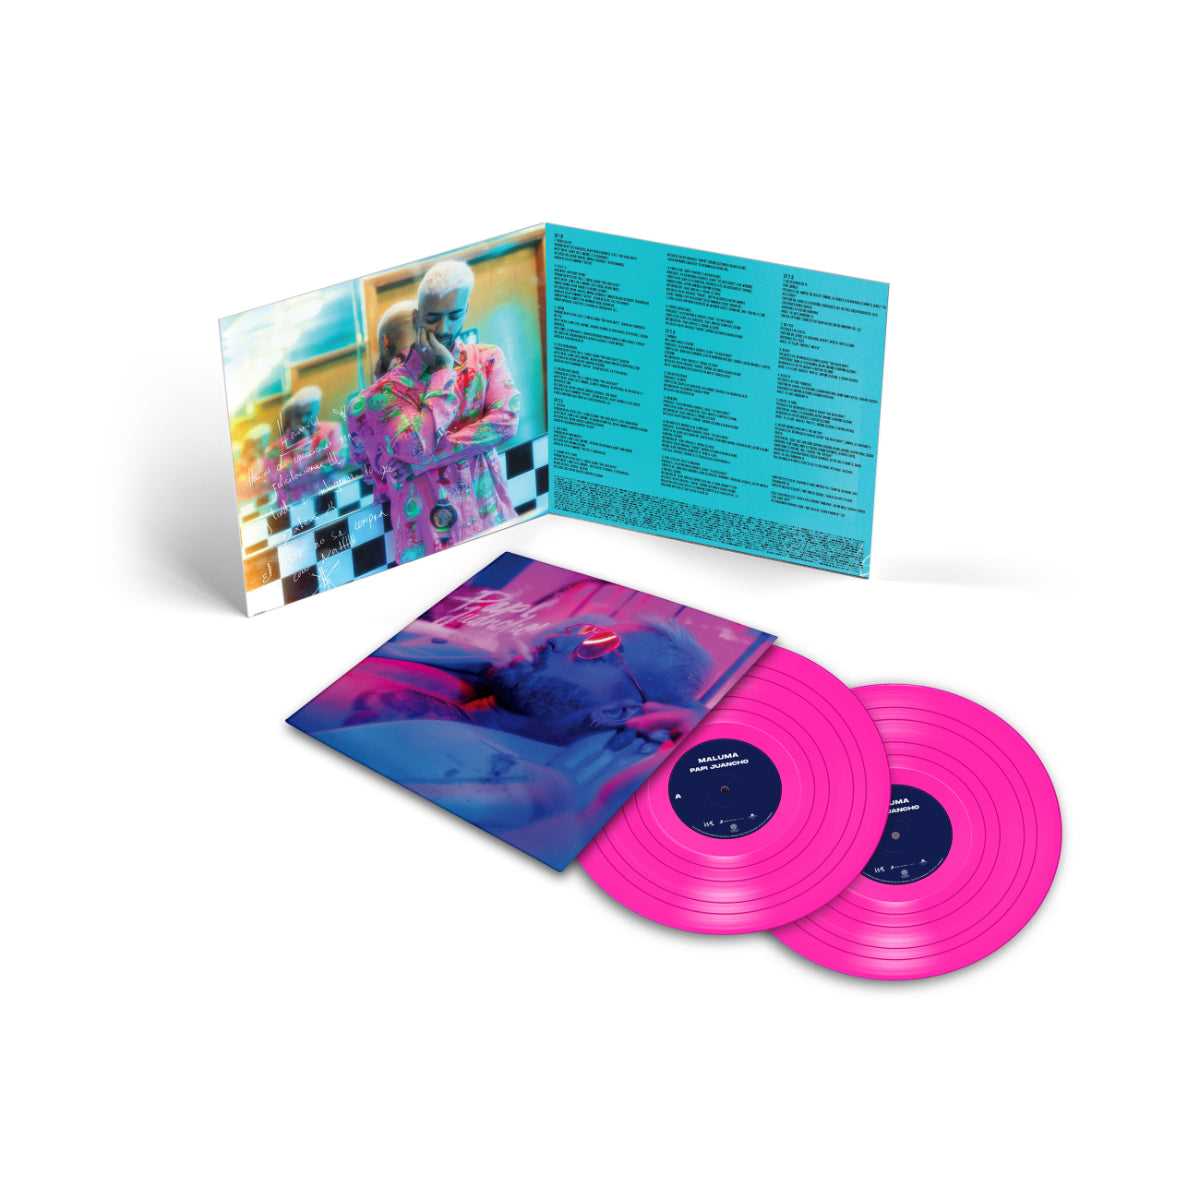 PAPI JUANCHO Pink Vinyl 2LP